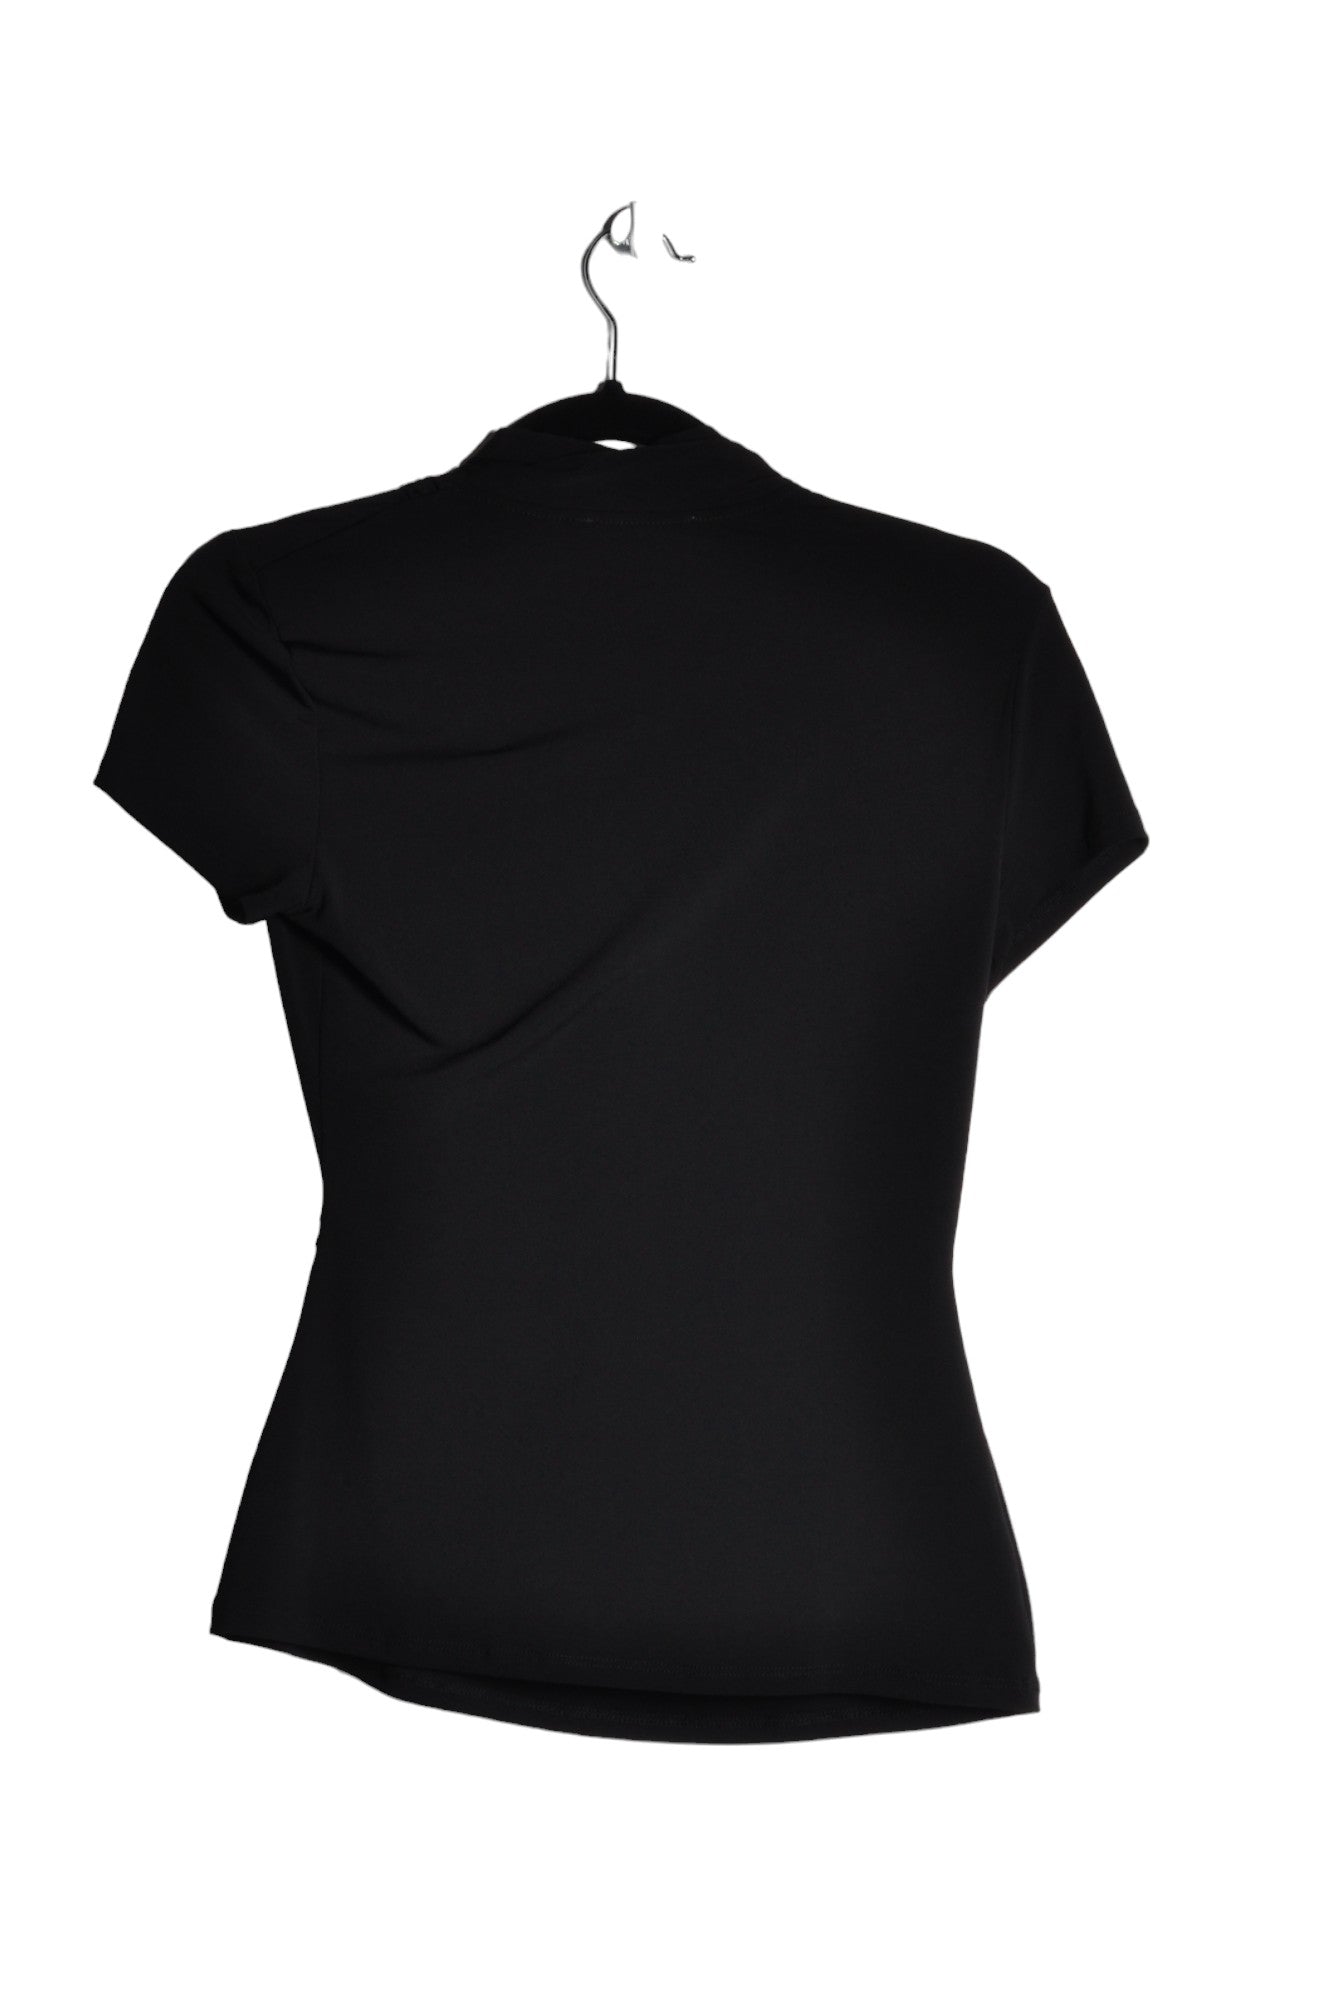 SUZY SHIER Women Blouses Regular fit in Black - Size XS | 12 $ KOOP